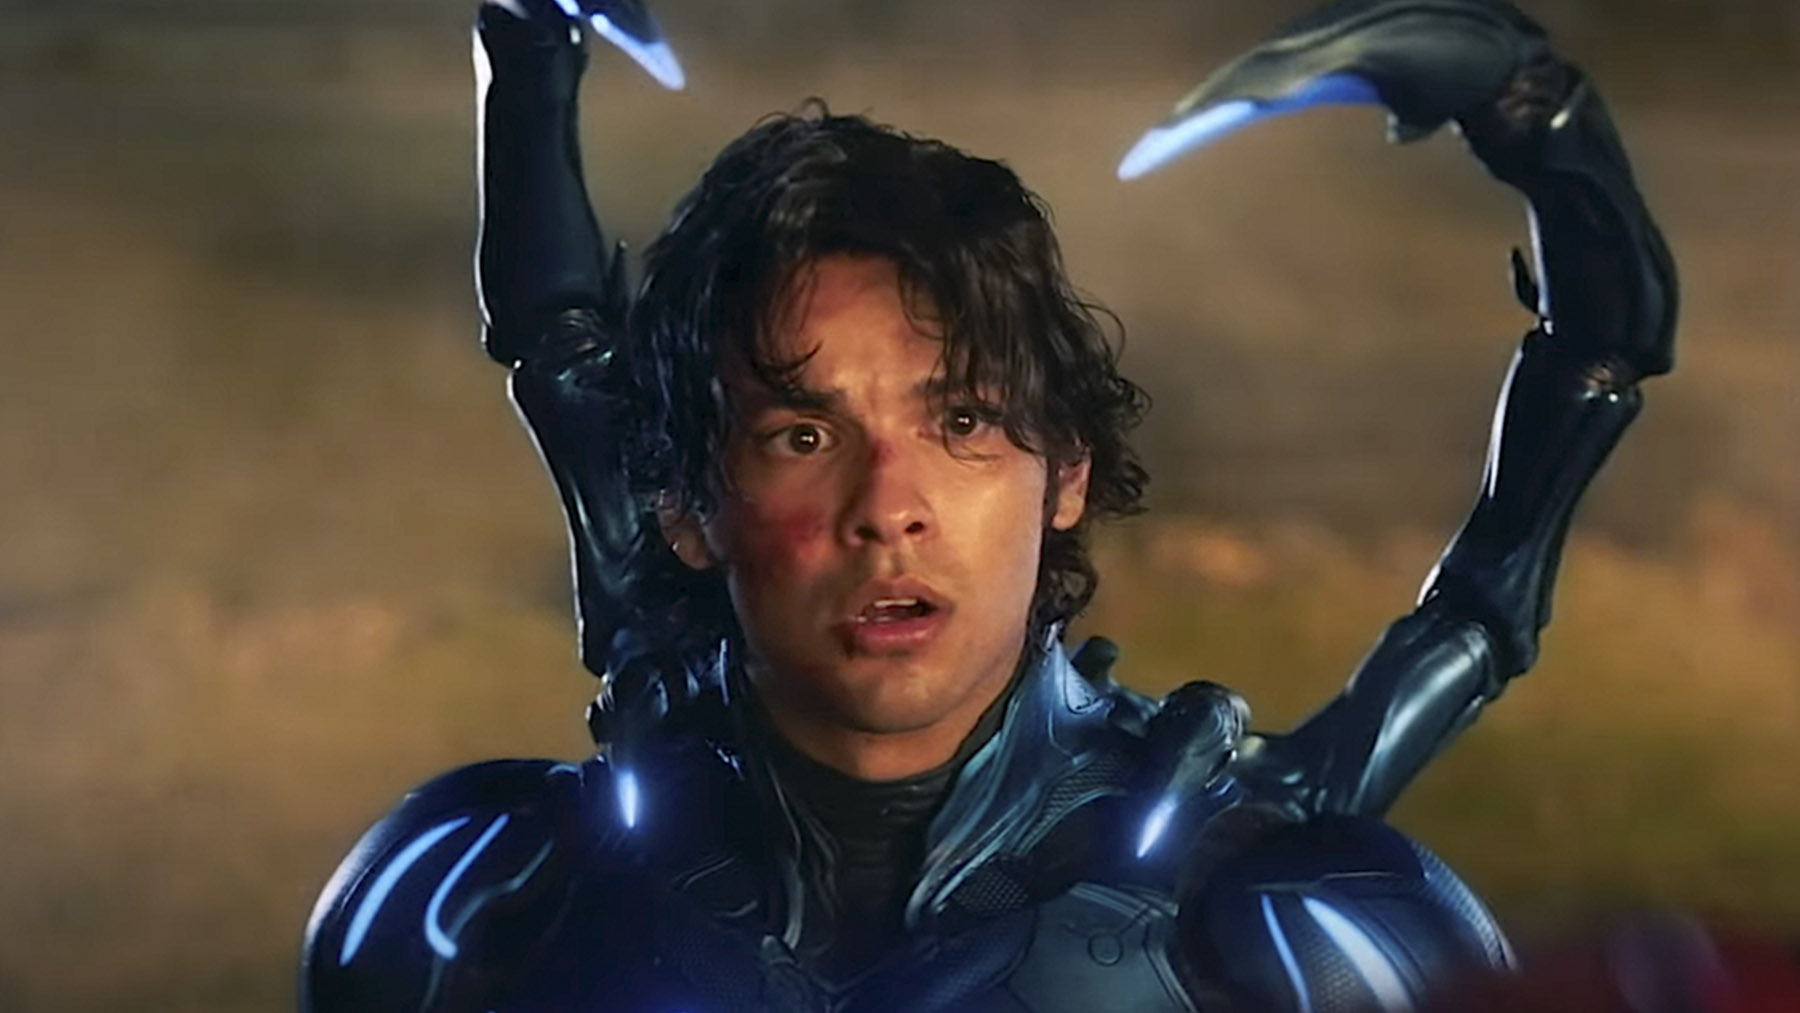 Xolo Maridueña es Jaime Reyes el héroe ‘Blue Beetle’ (DC Studios)